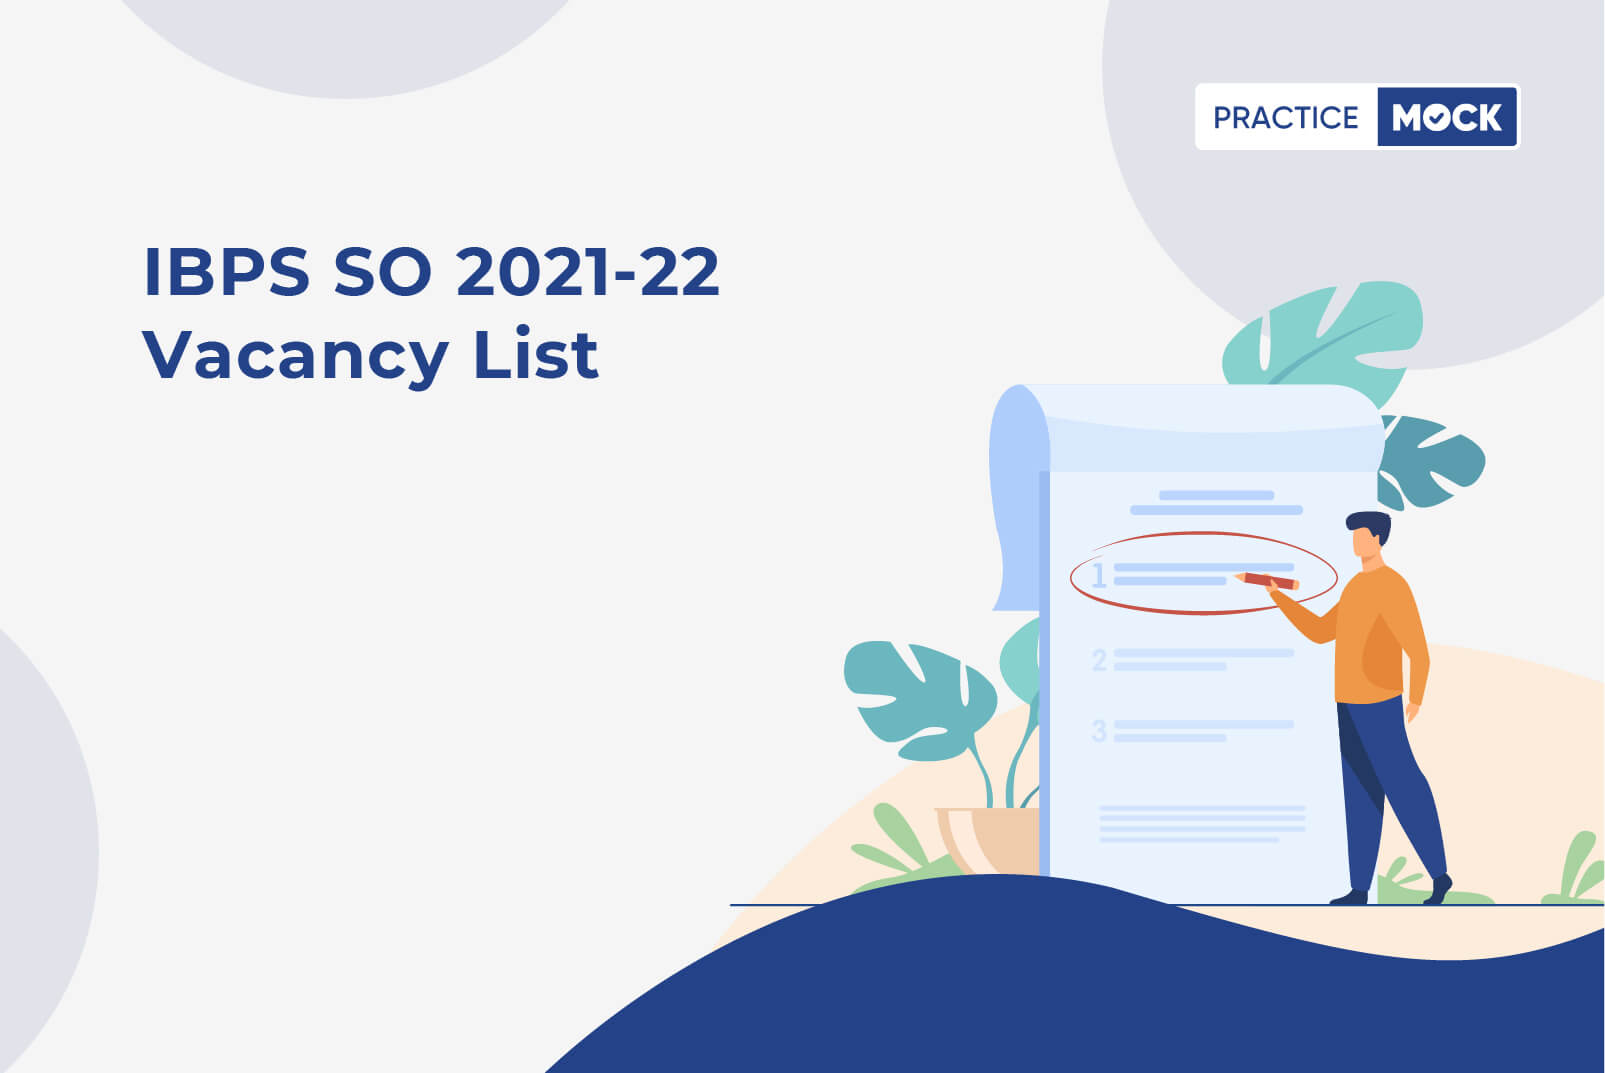 IBPS SO Vacancy List 2021-22